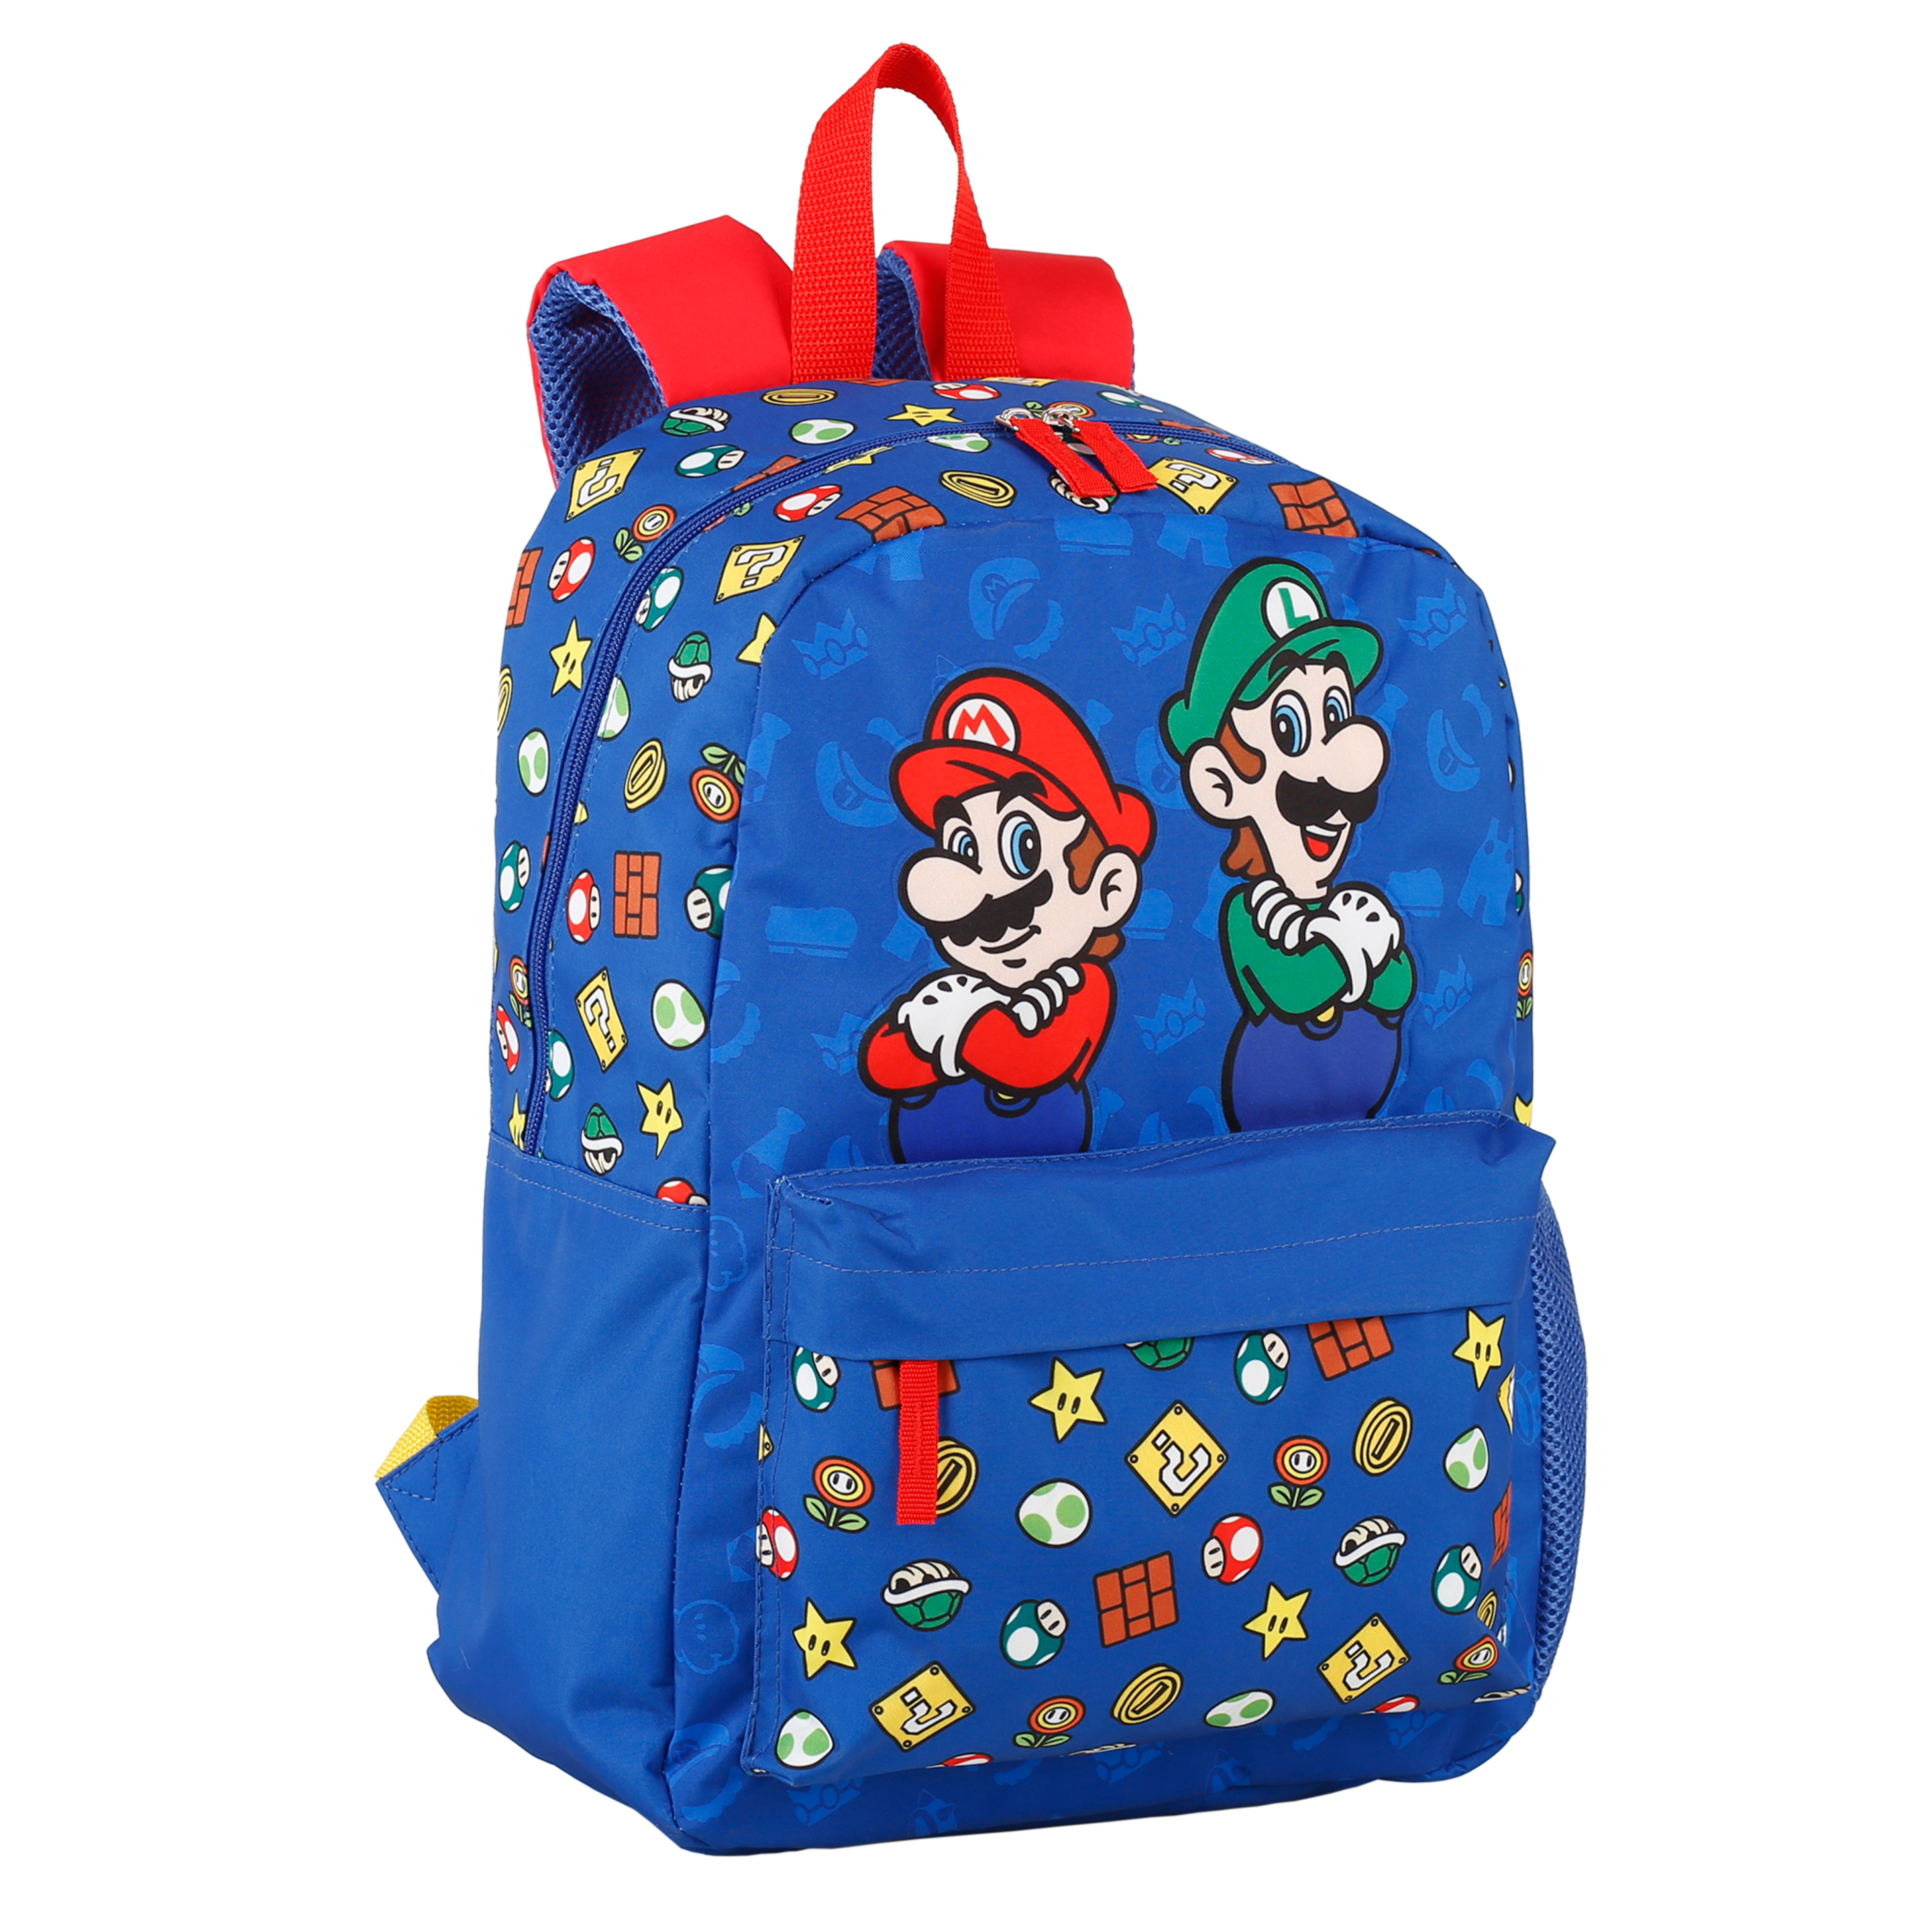 Mochila Escolar Supermario Mario Y Luigi Americana - azul - 